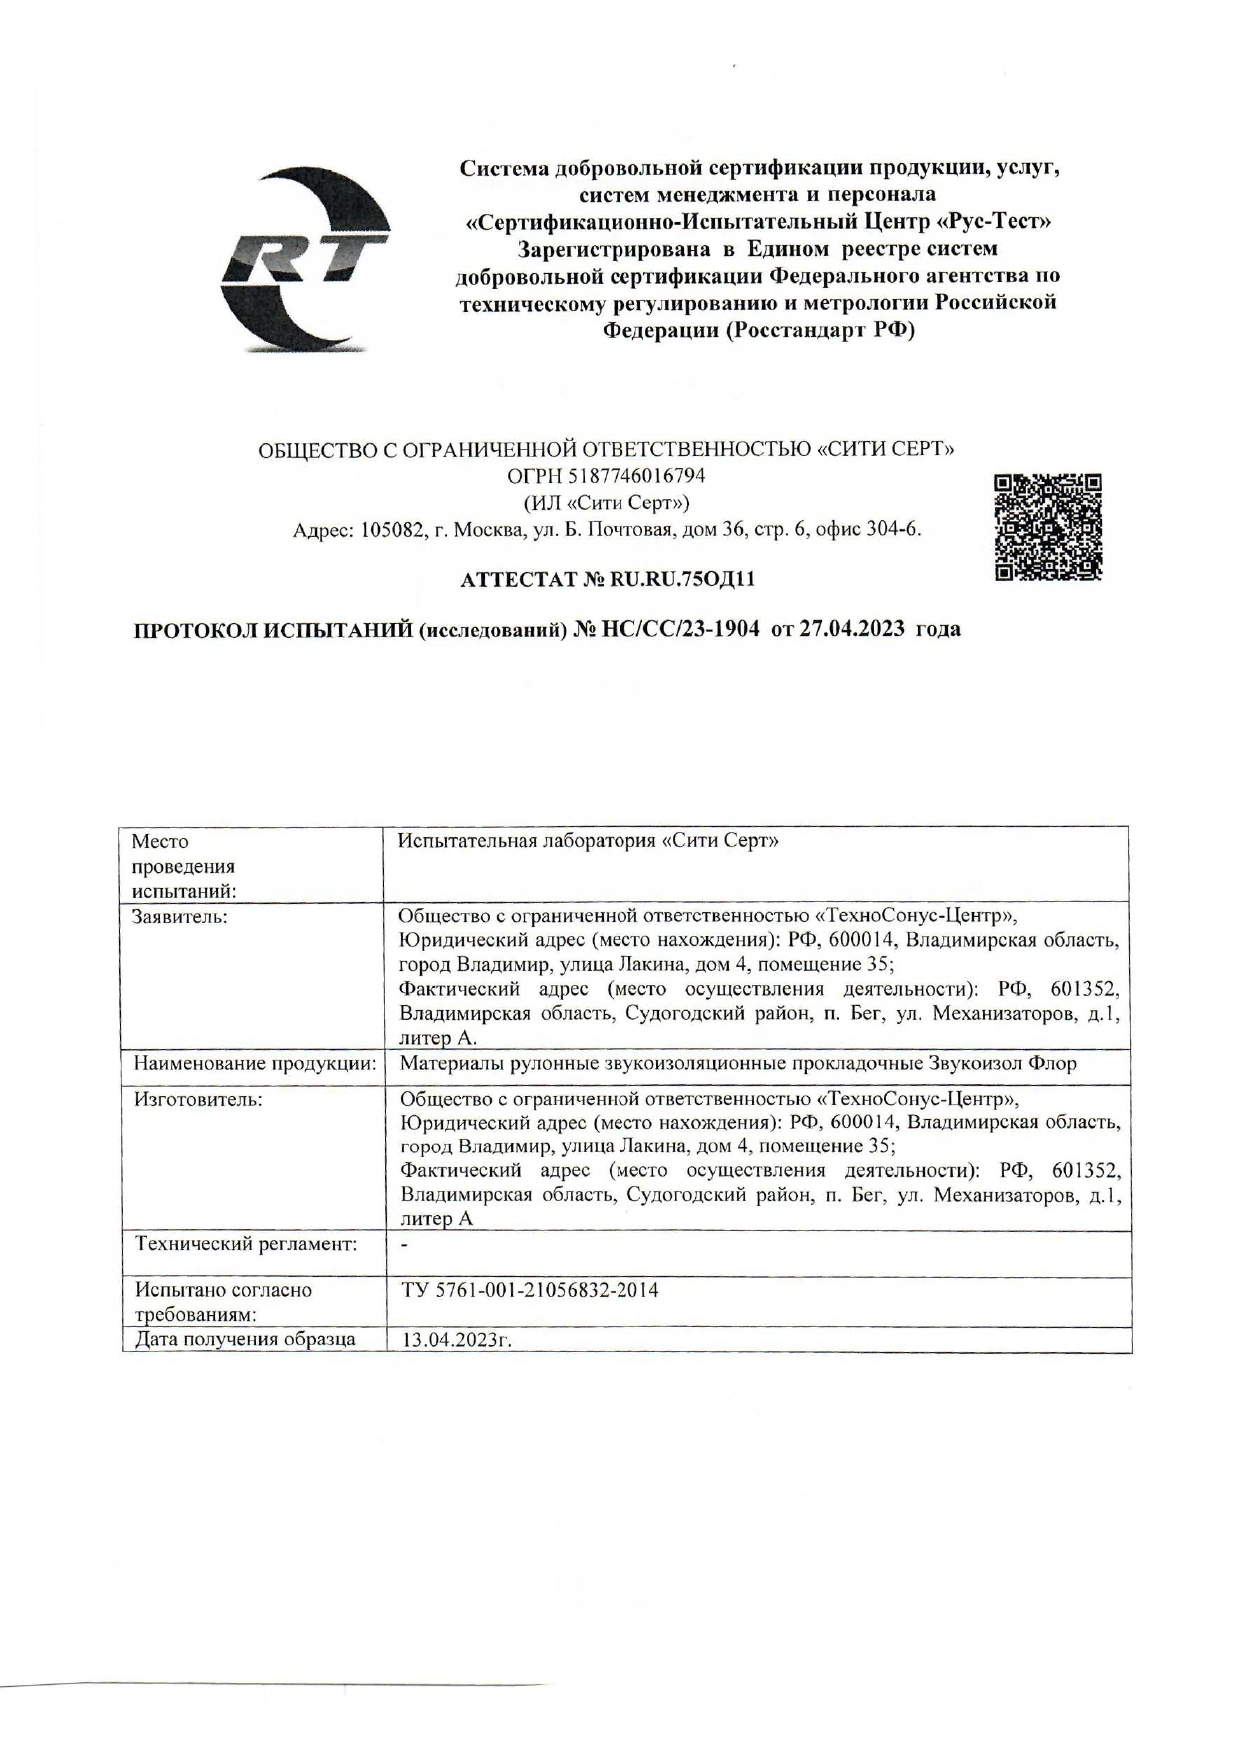 Протокол испытаний водопроницаемости от 27.04.2023г.